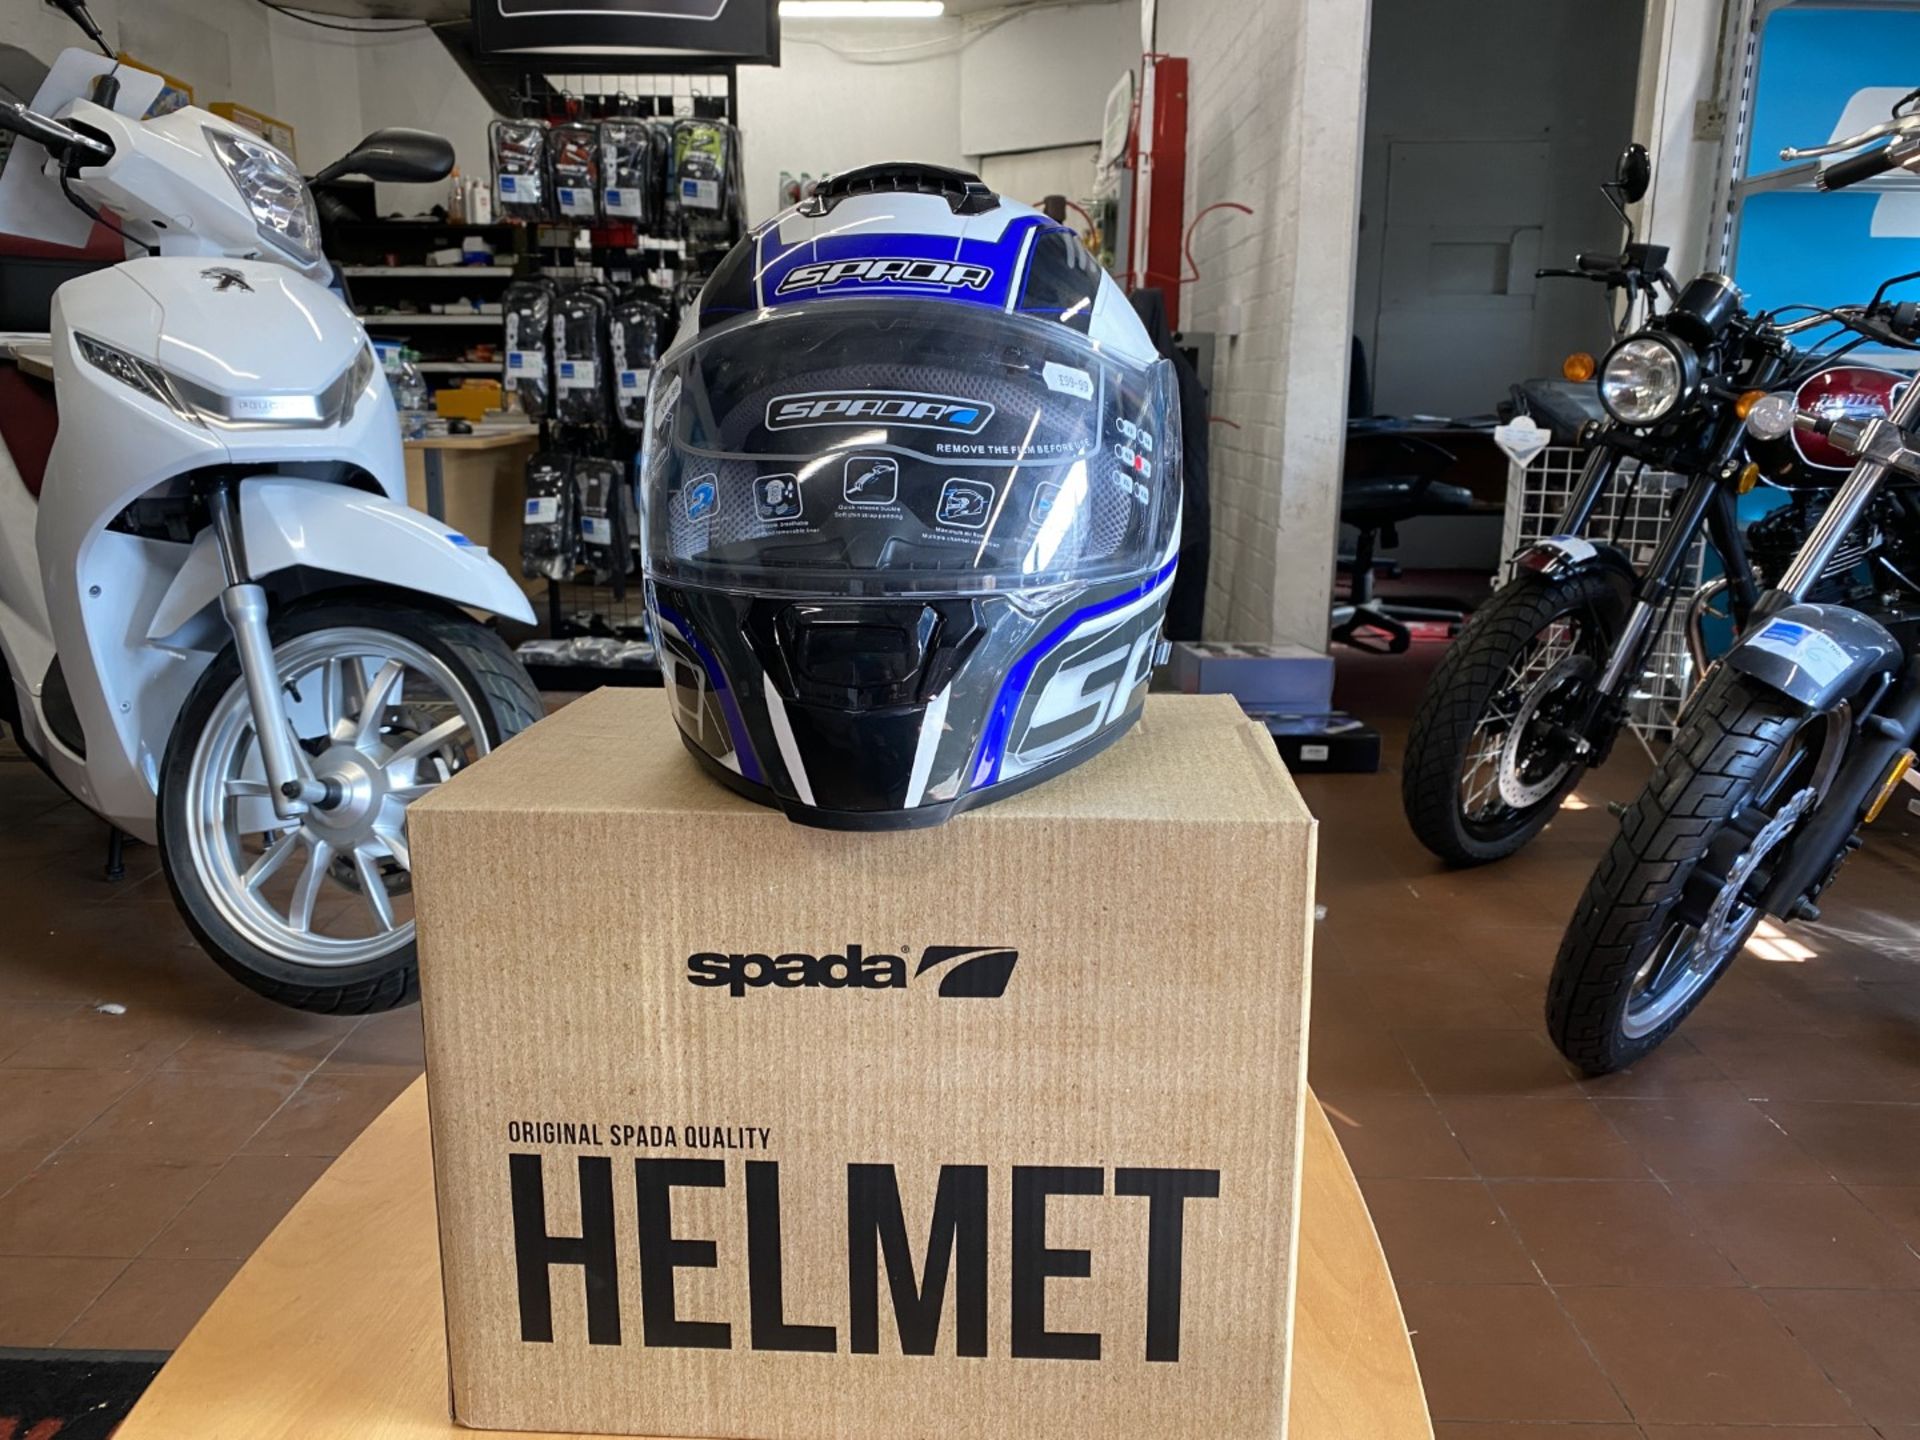 Spada Helmet Matt White/Blue/Black Large - Motorcycle / Motorbike Helmet - RRP £99.00